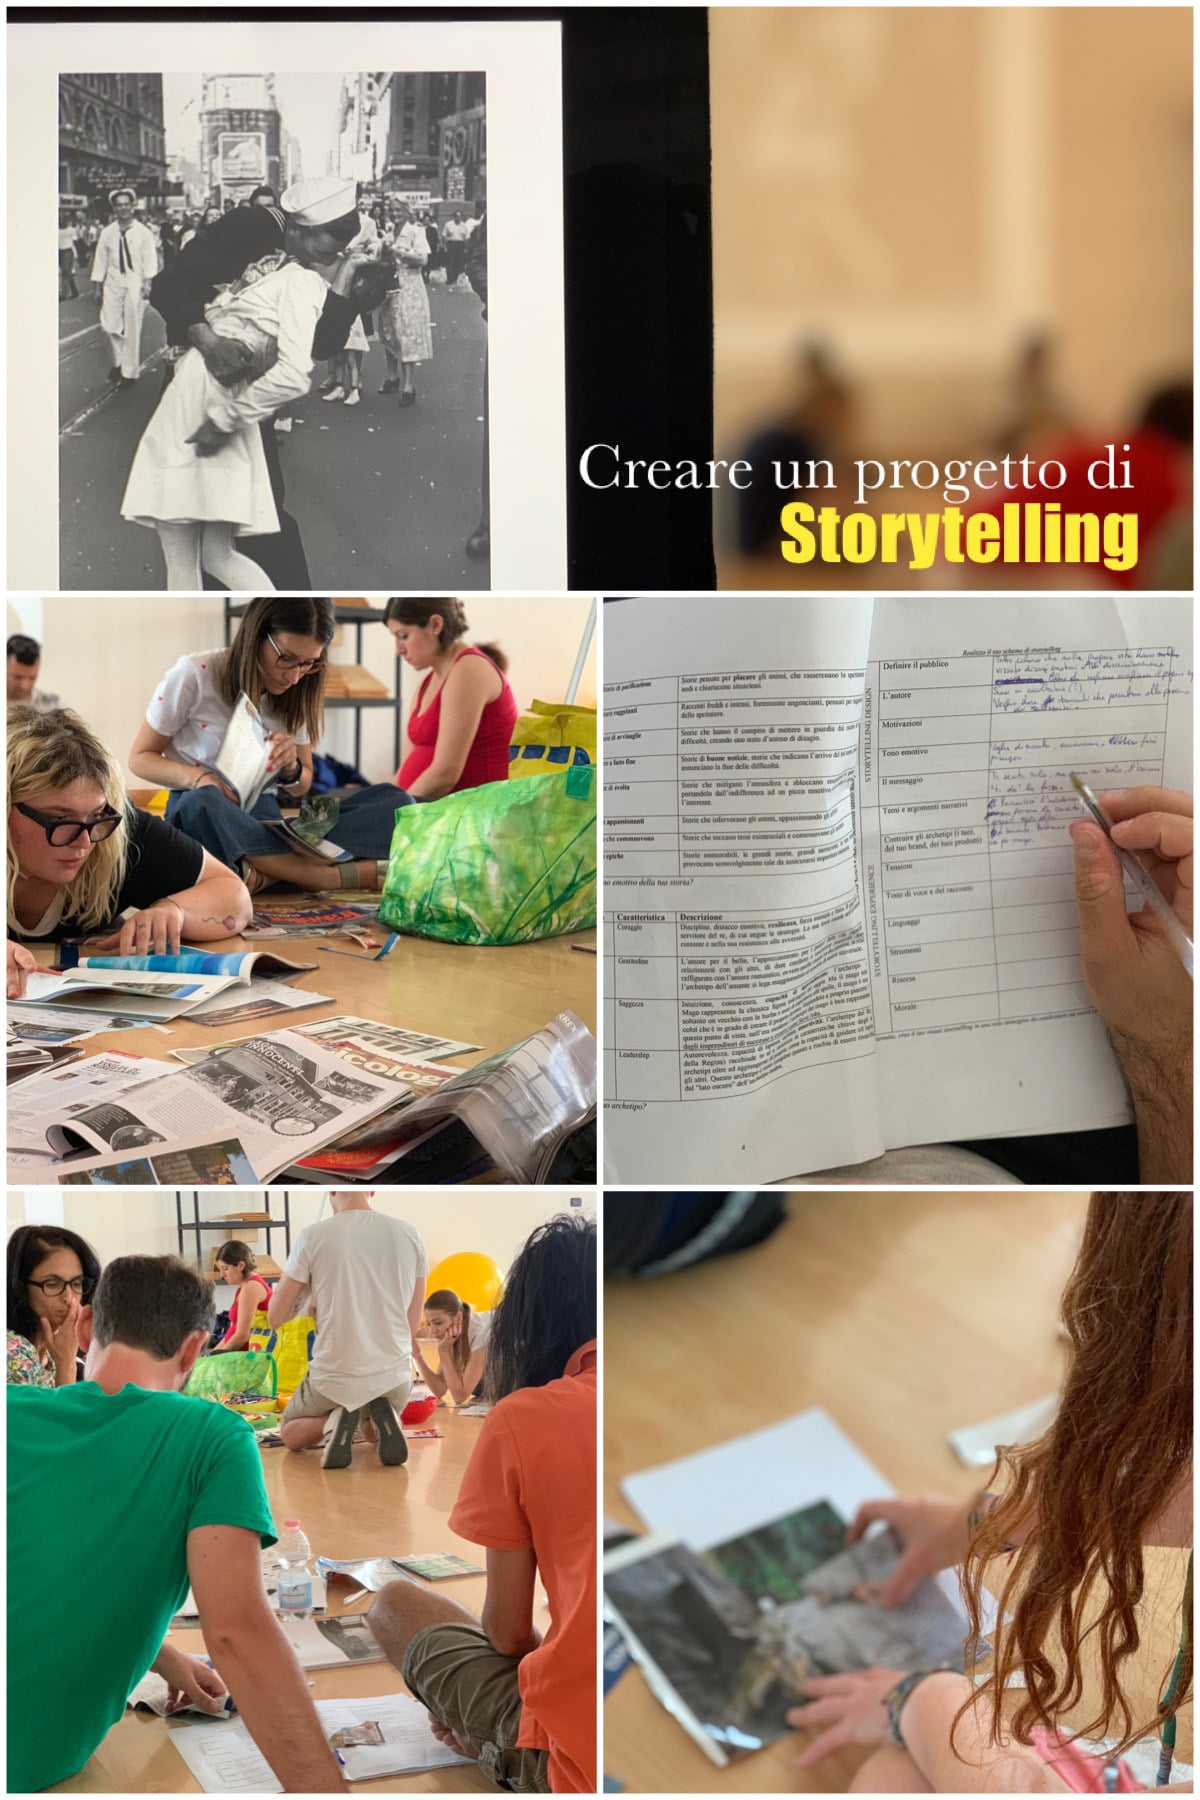 Creare un progetto di Storytelling